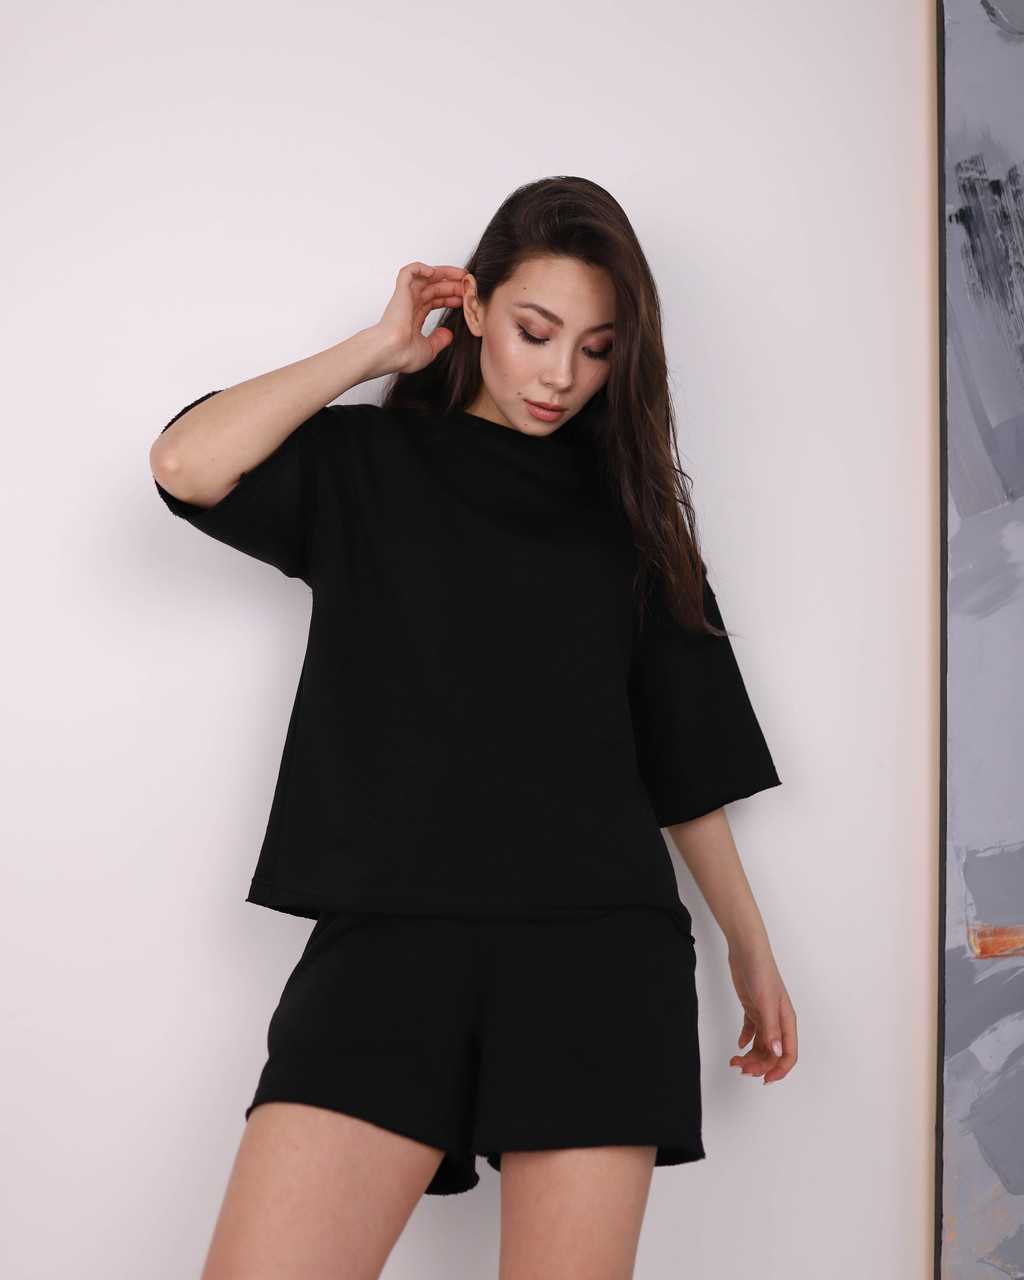 Летний комплект футболка и шорты женский черный оверсайз модель Ронни TURWEAR - Фото 3